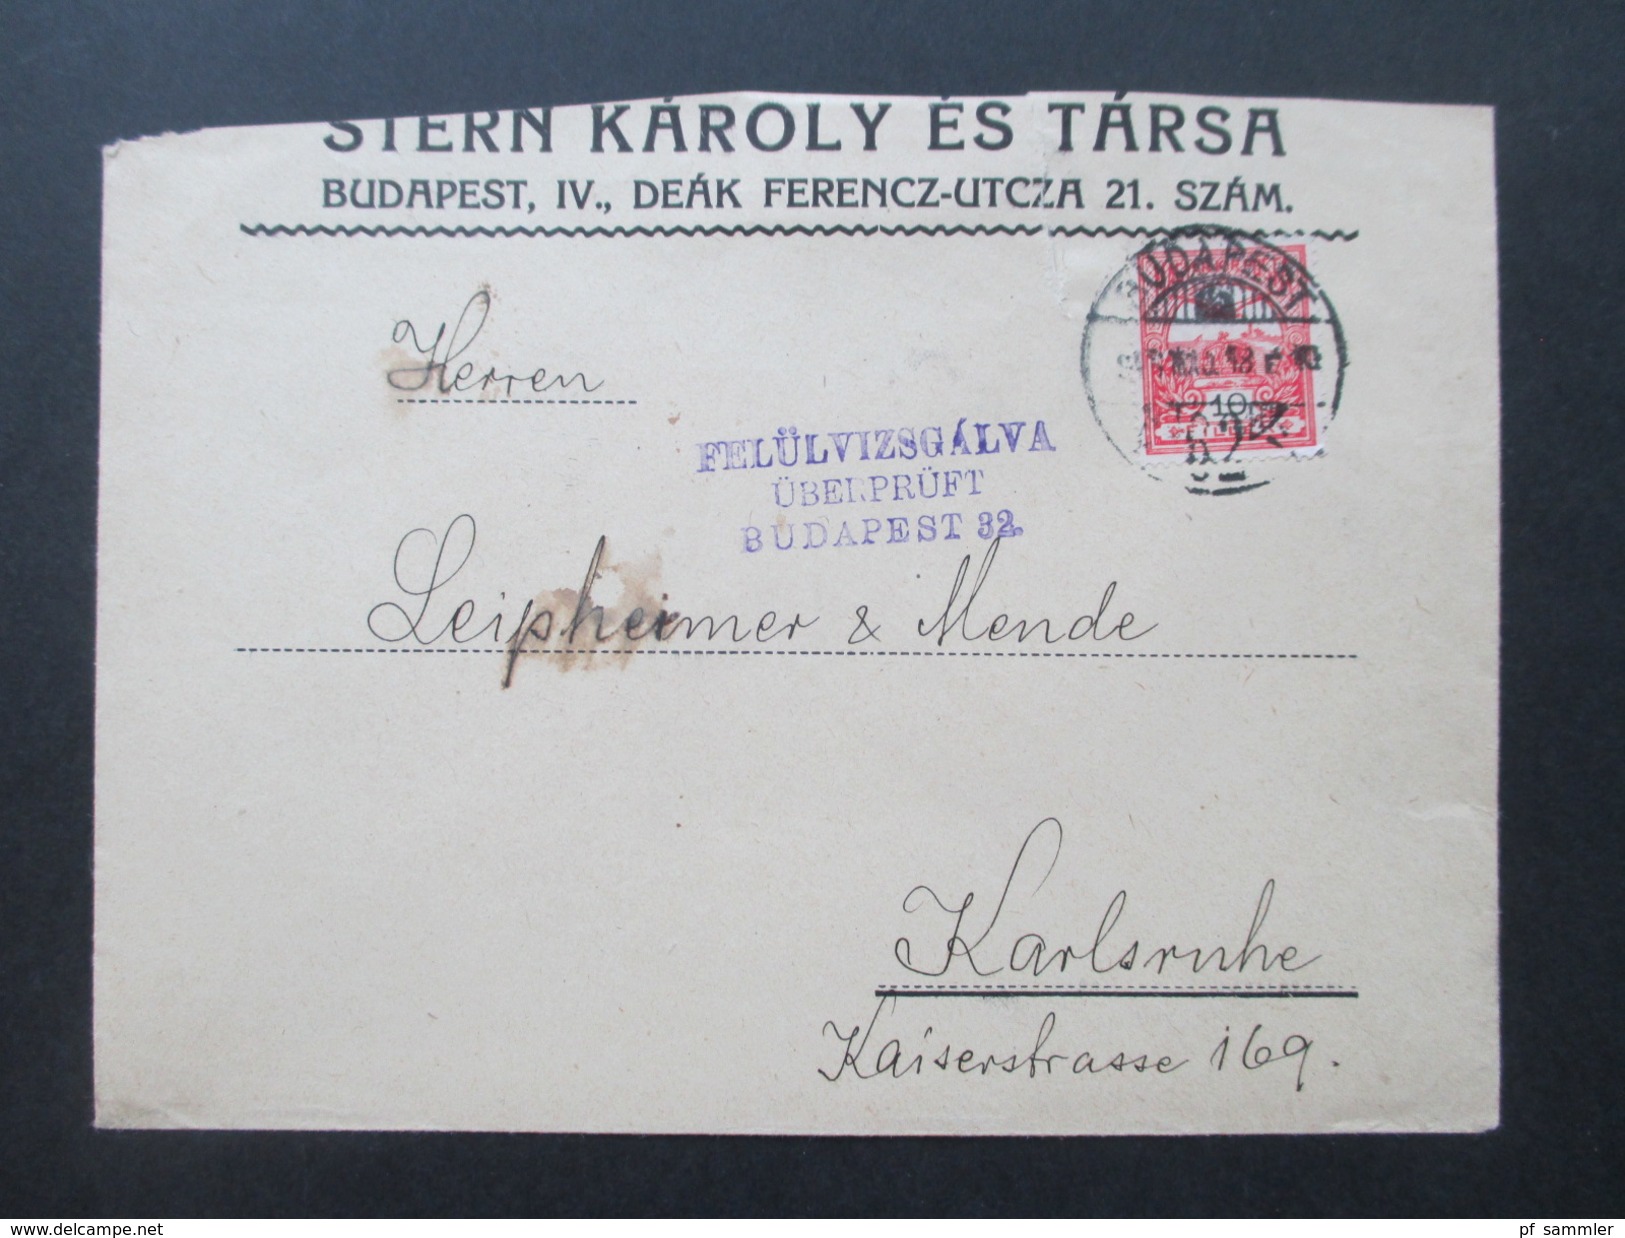 Ungarn 1918 Beleg / Zensutbeleg. Felülvizsgalva überprüft Budapest 32. Nach Karlsruhe. - Storia Postale